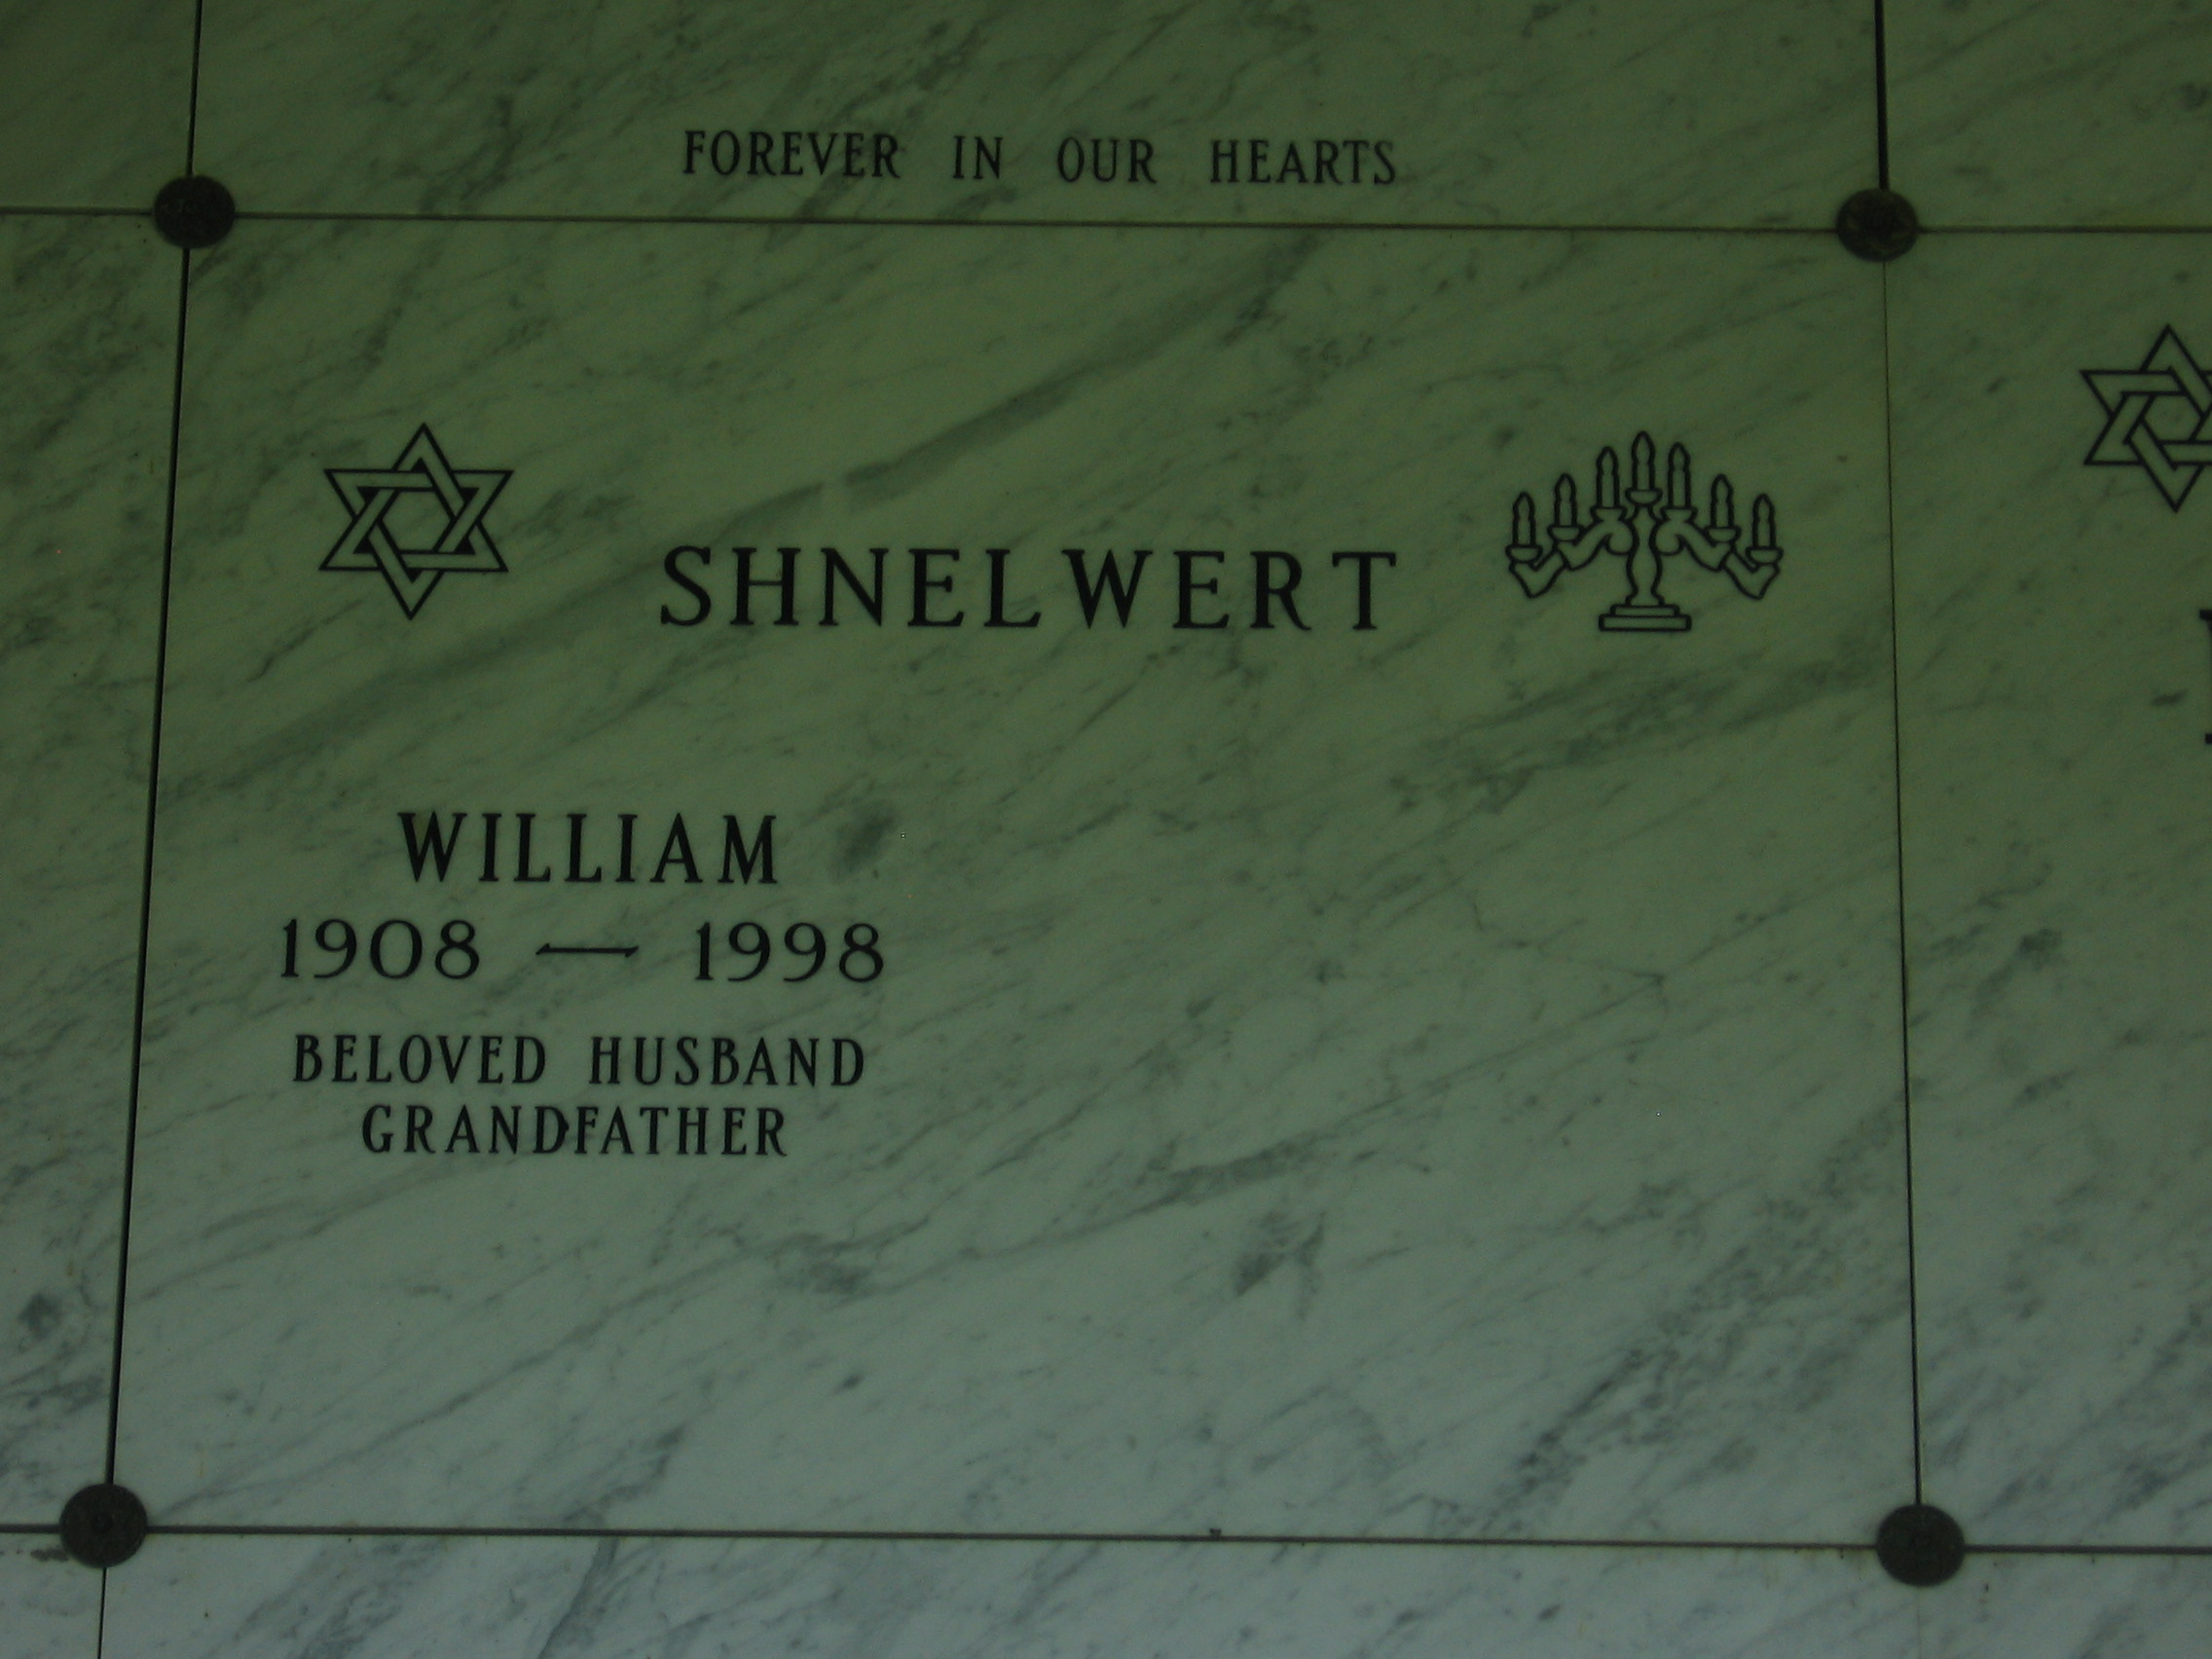 William Shnelwert